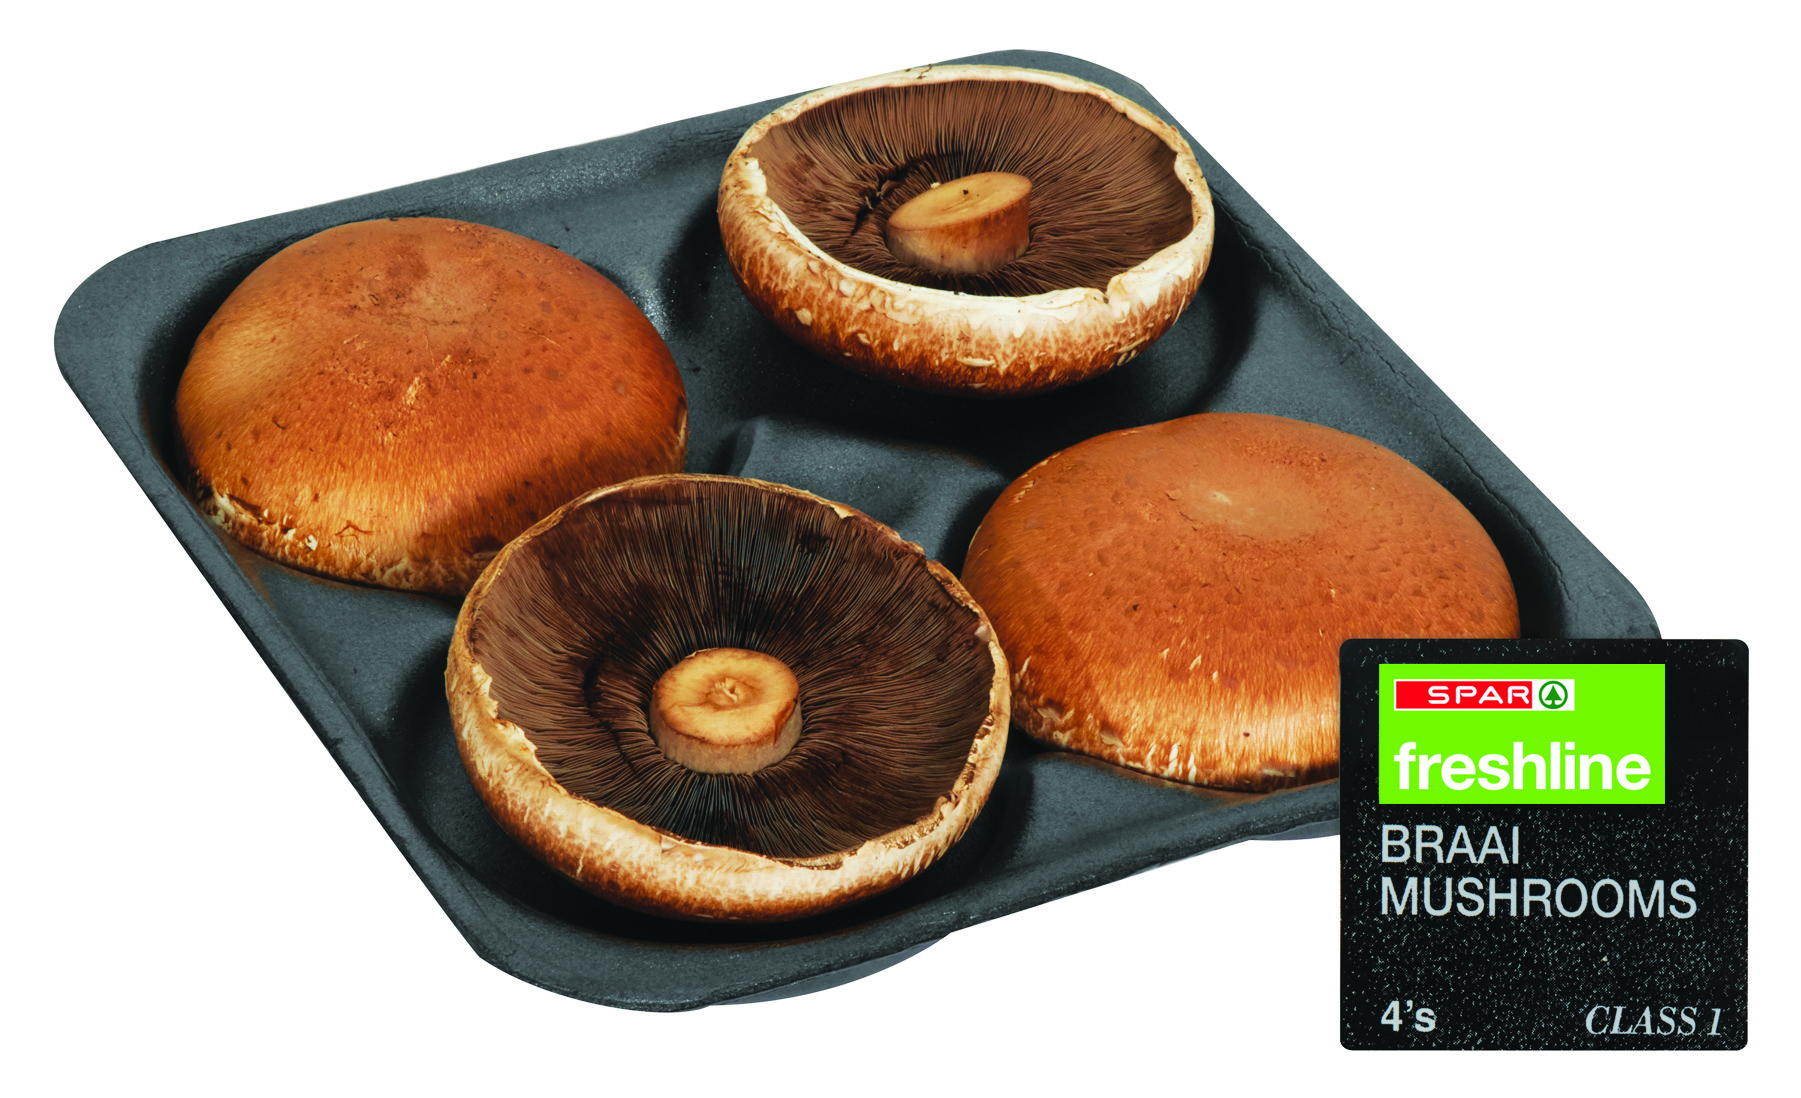 freshline braai mushrooms 